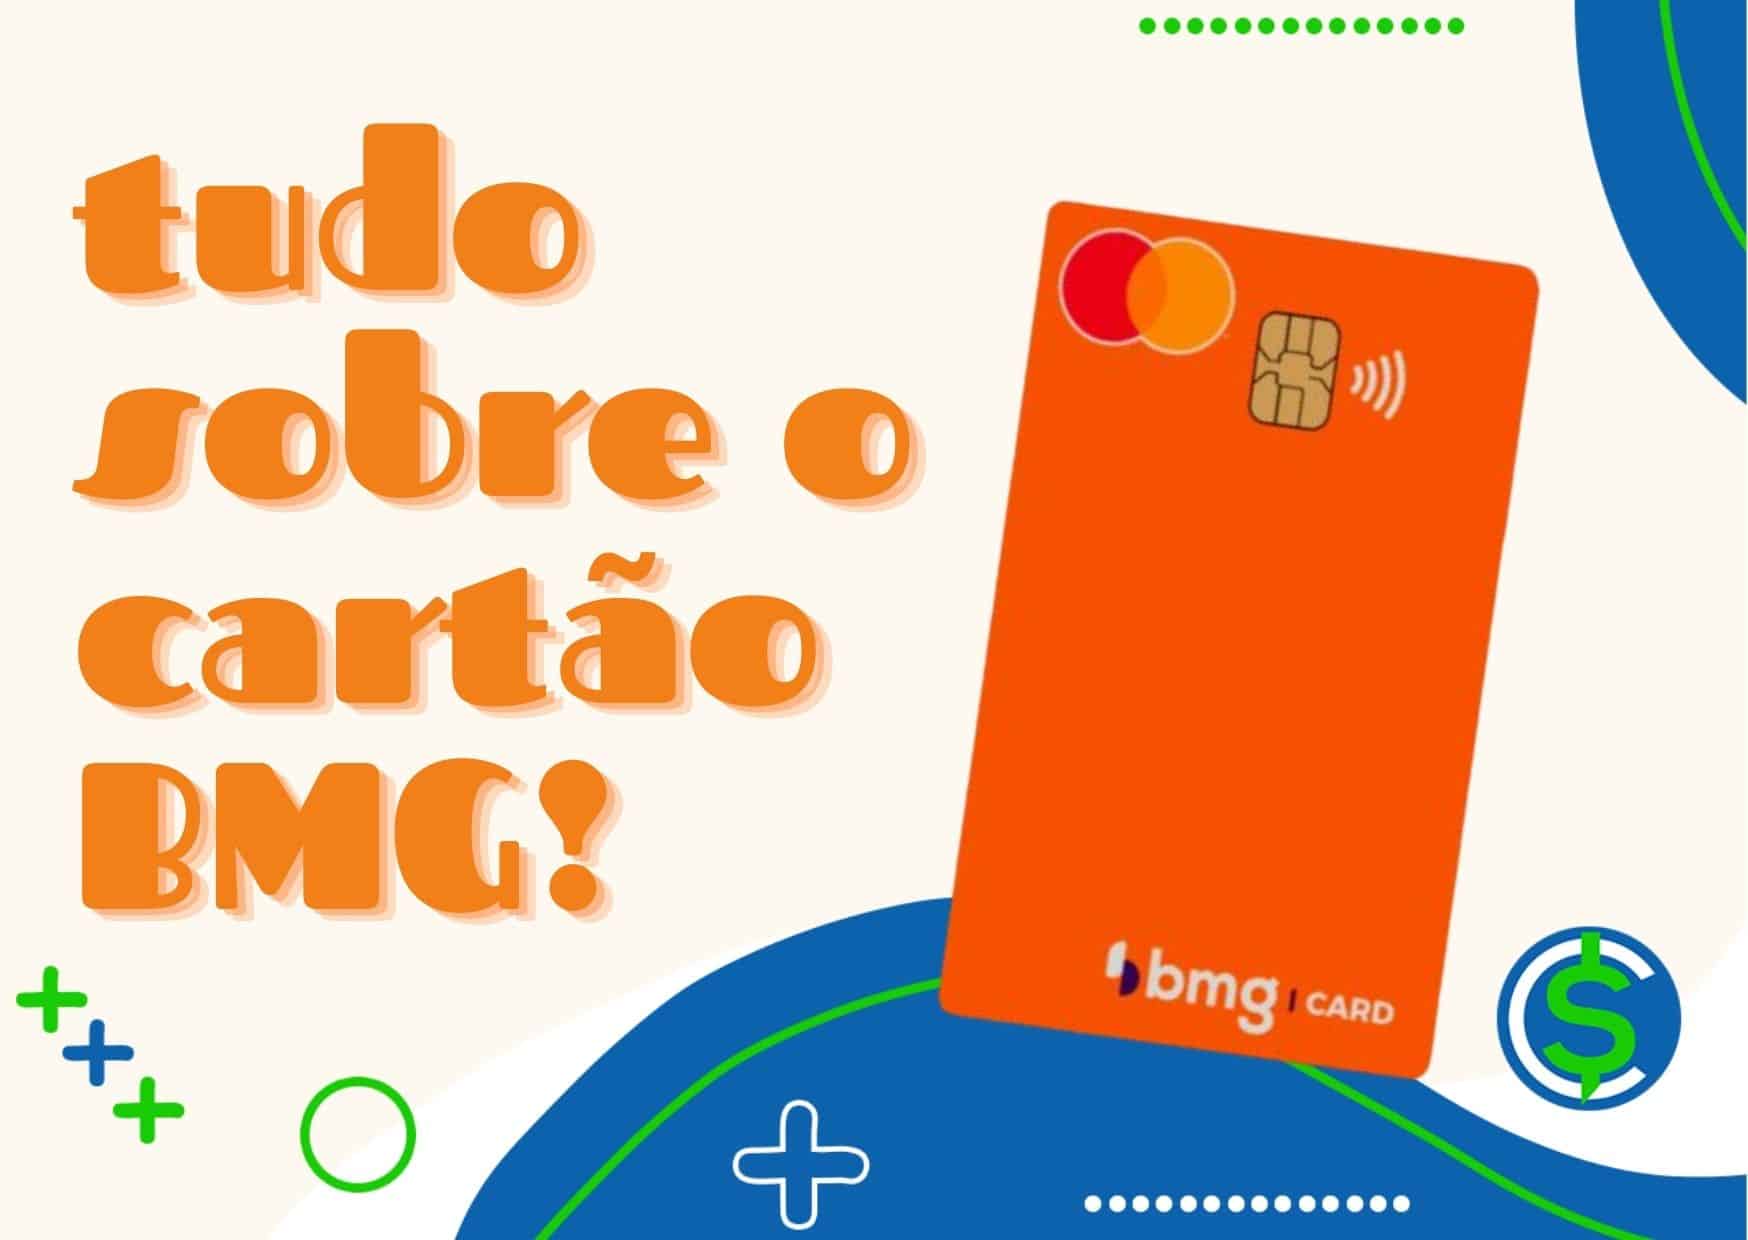 cartão de crédito bmg